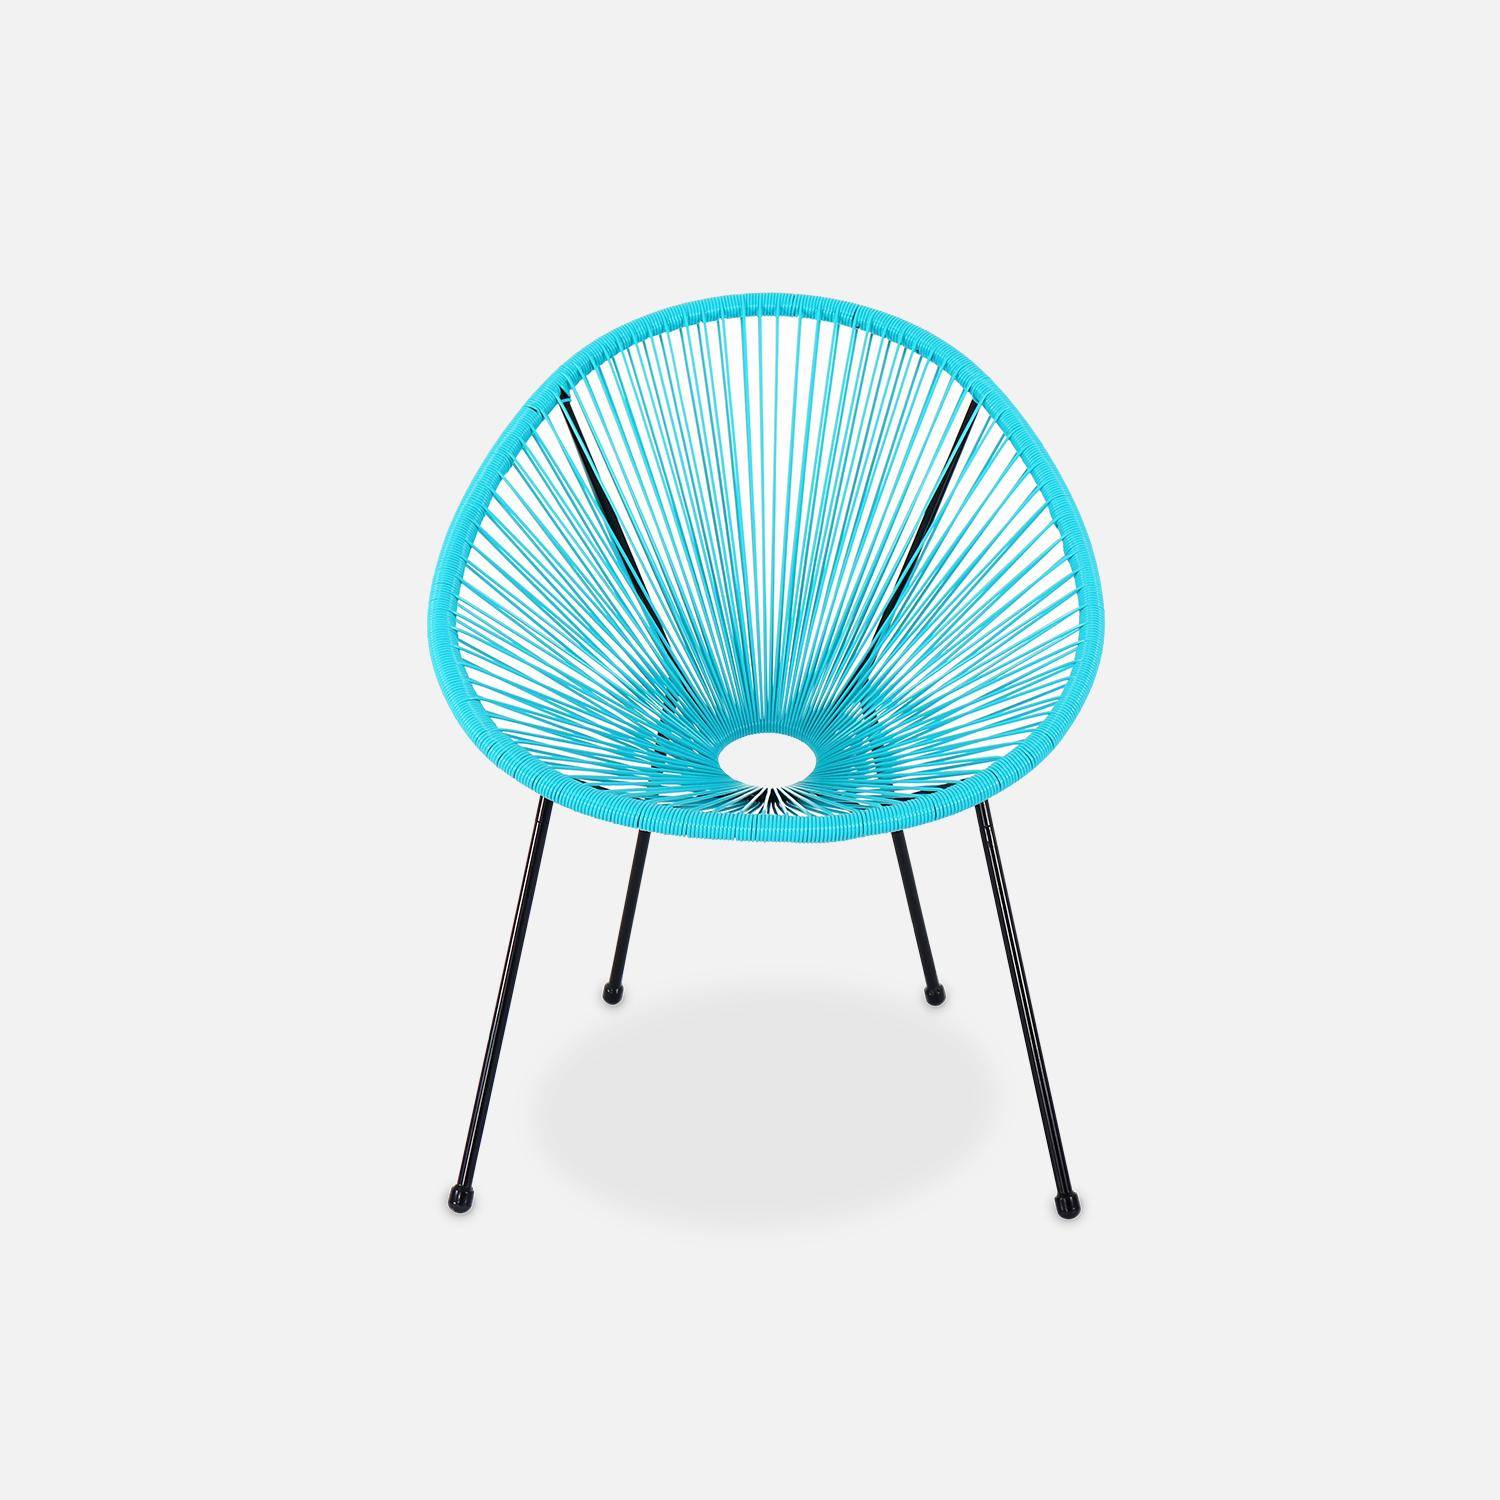 ACAPULCO stoel ei-vormig -Turkoois- Stoel 4 poten retro design, plastic koorden, binnen/buiten Photo3